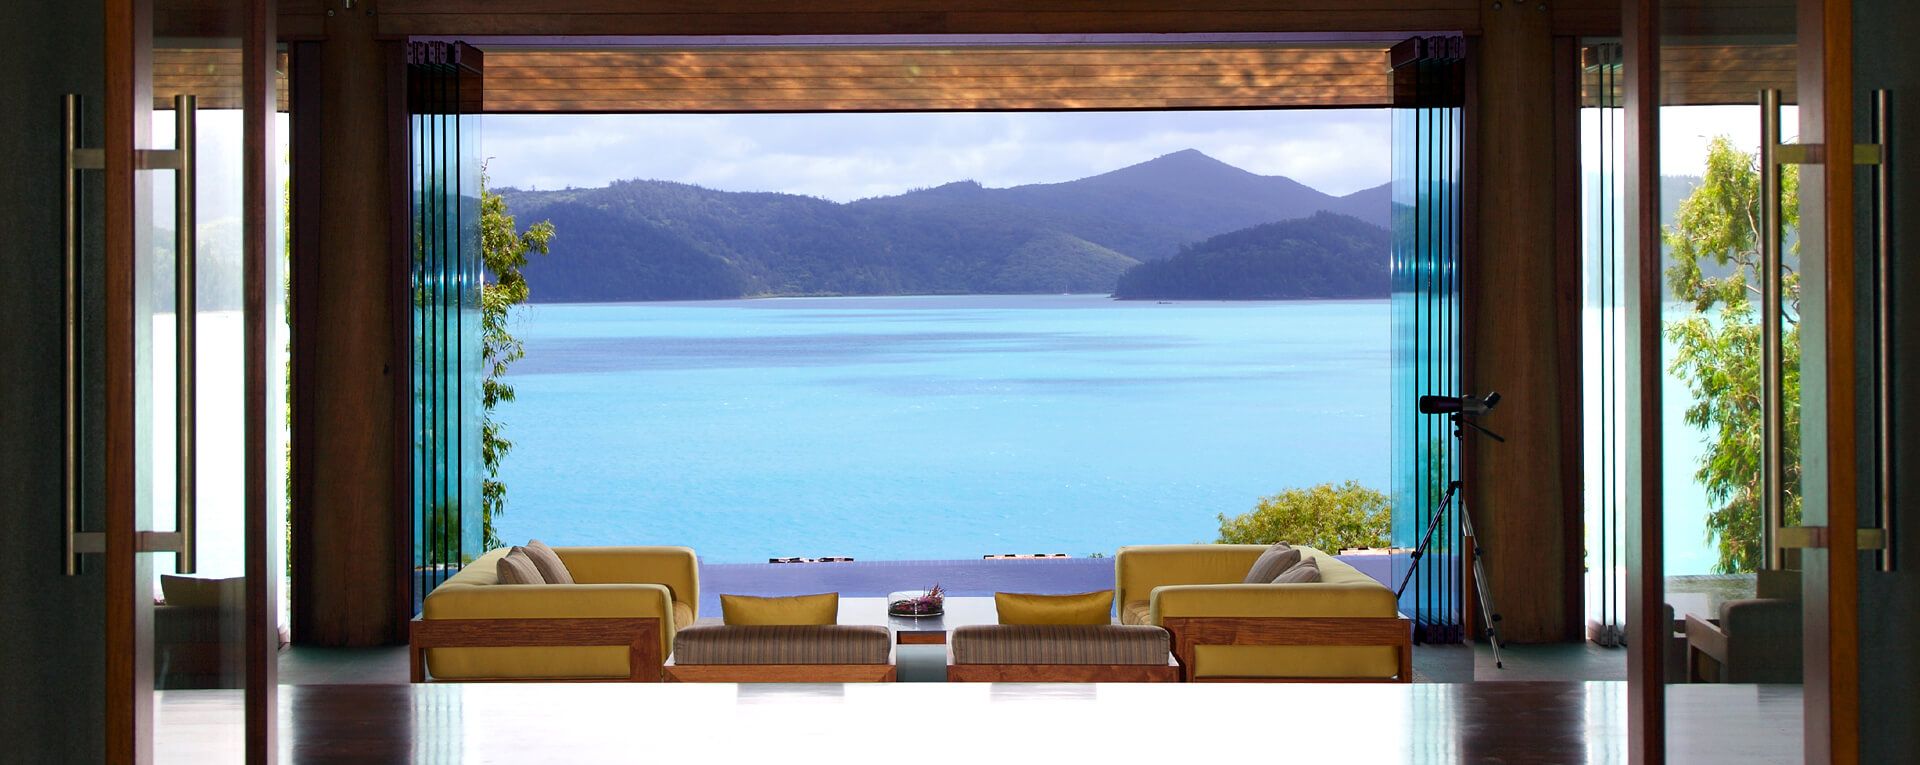 Qualia - Australia Luxury Resort